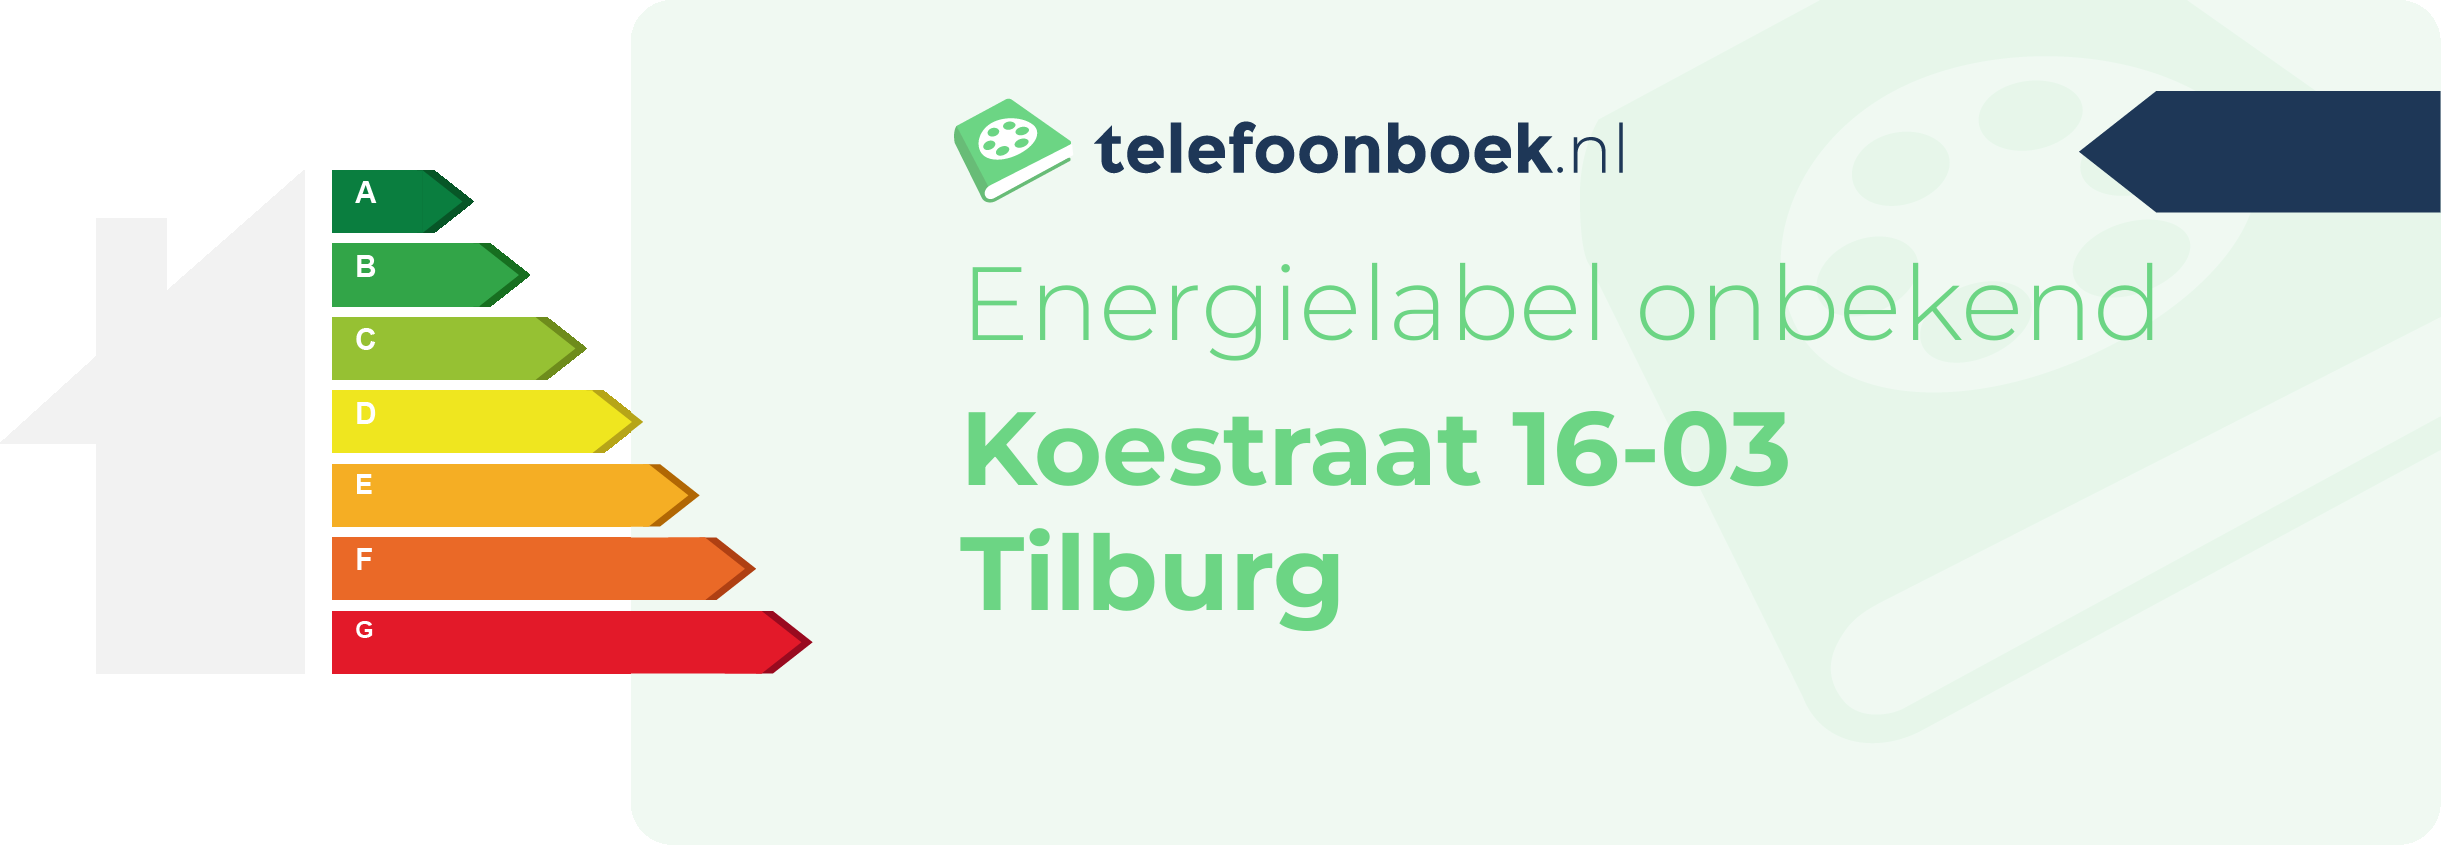 Energielabel Koestraat 16-03 Tilburg